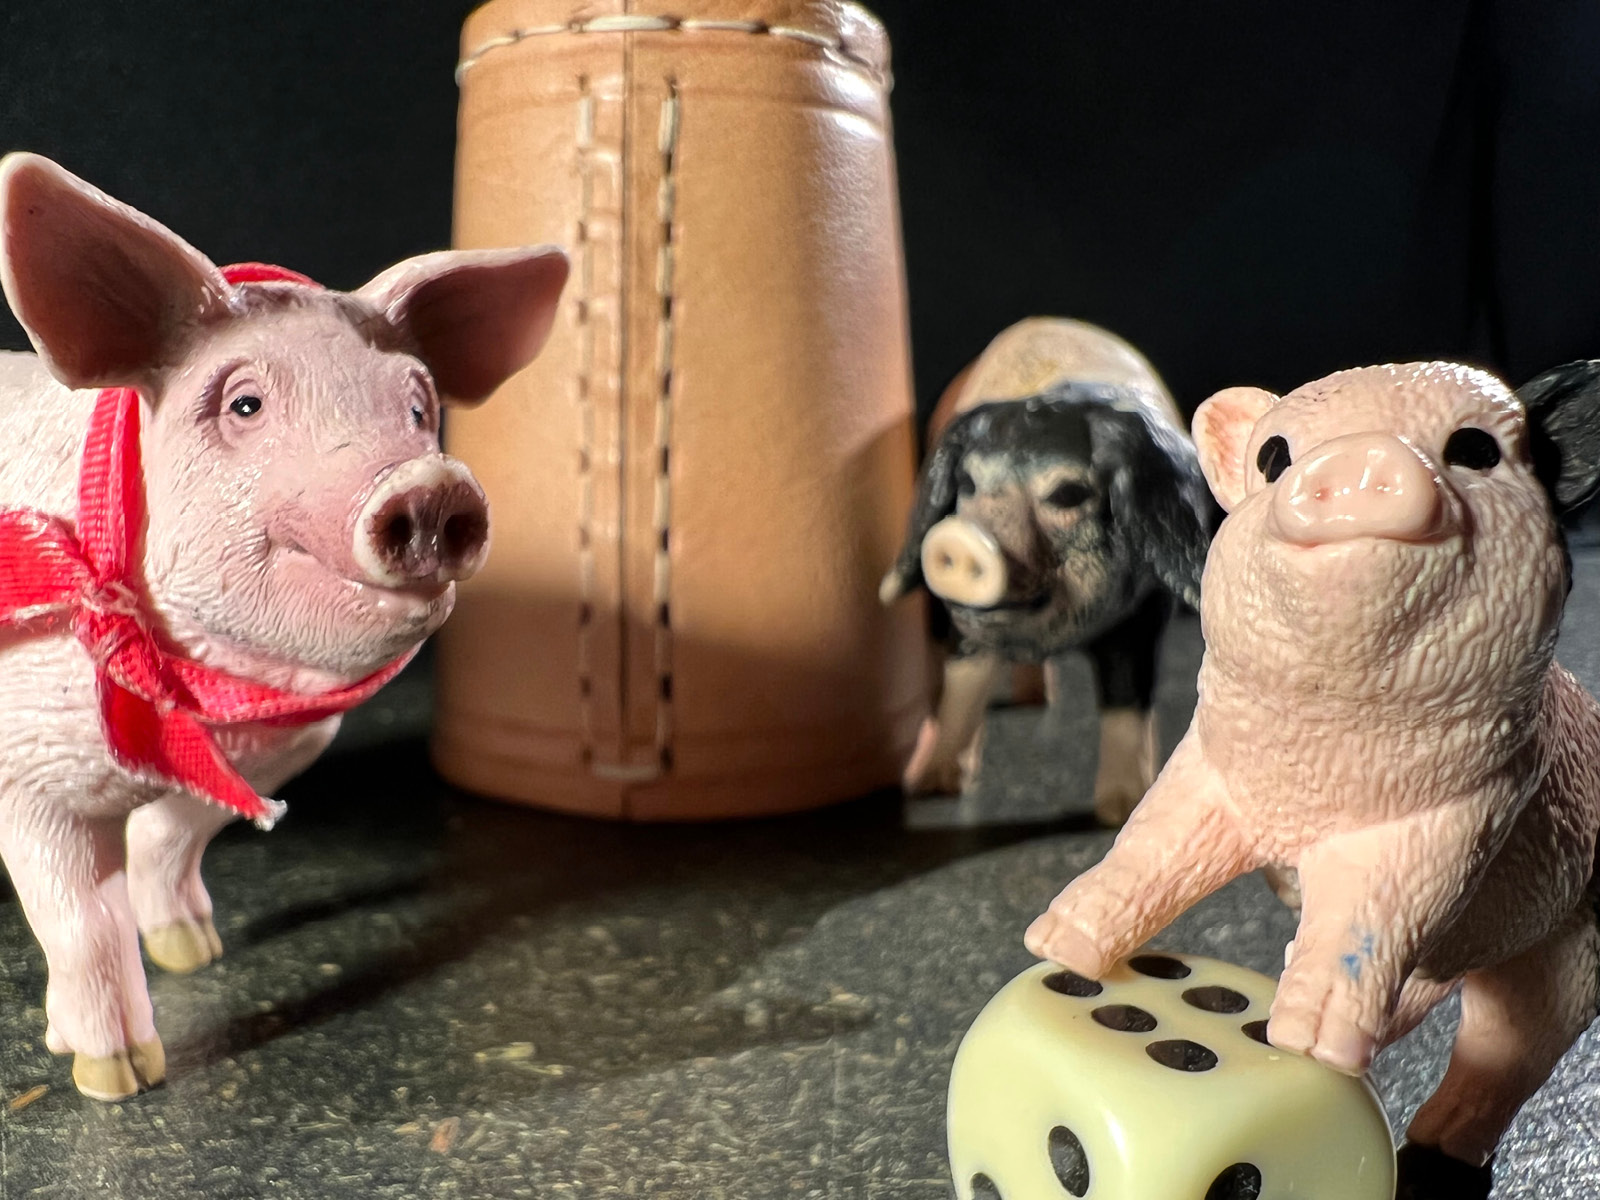 Die Figur eines kleinen Schweinchens stützt die Pfoten auf einen Würfel mit der Punktzahl sechs. Im Hintergrund sind noch zwei weitere Schweinfiguren, eines davon ist rosa und trägt ein rotes Halstuch. Das andere hat Schlappohren und einen schwarzen Kopf und befindet sich neben einem Würfelbecher aus Leder.